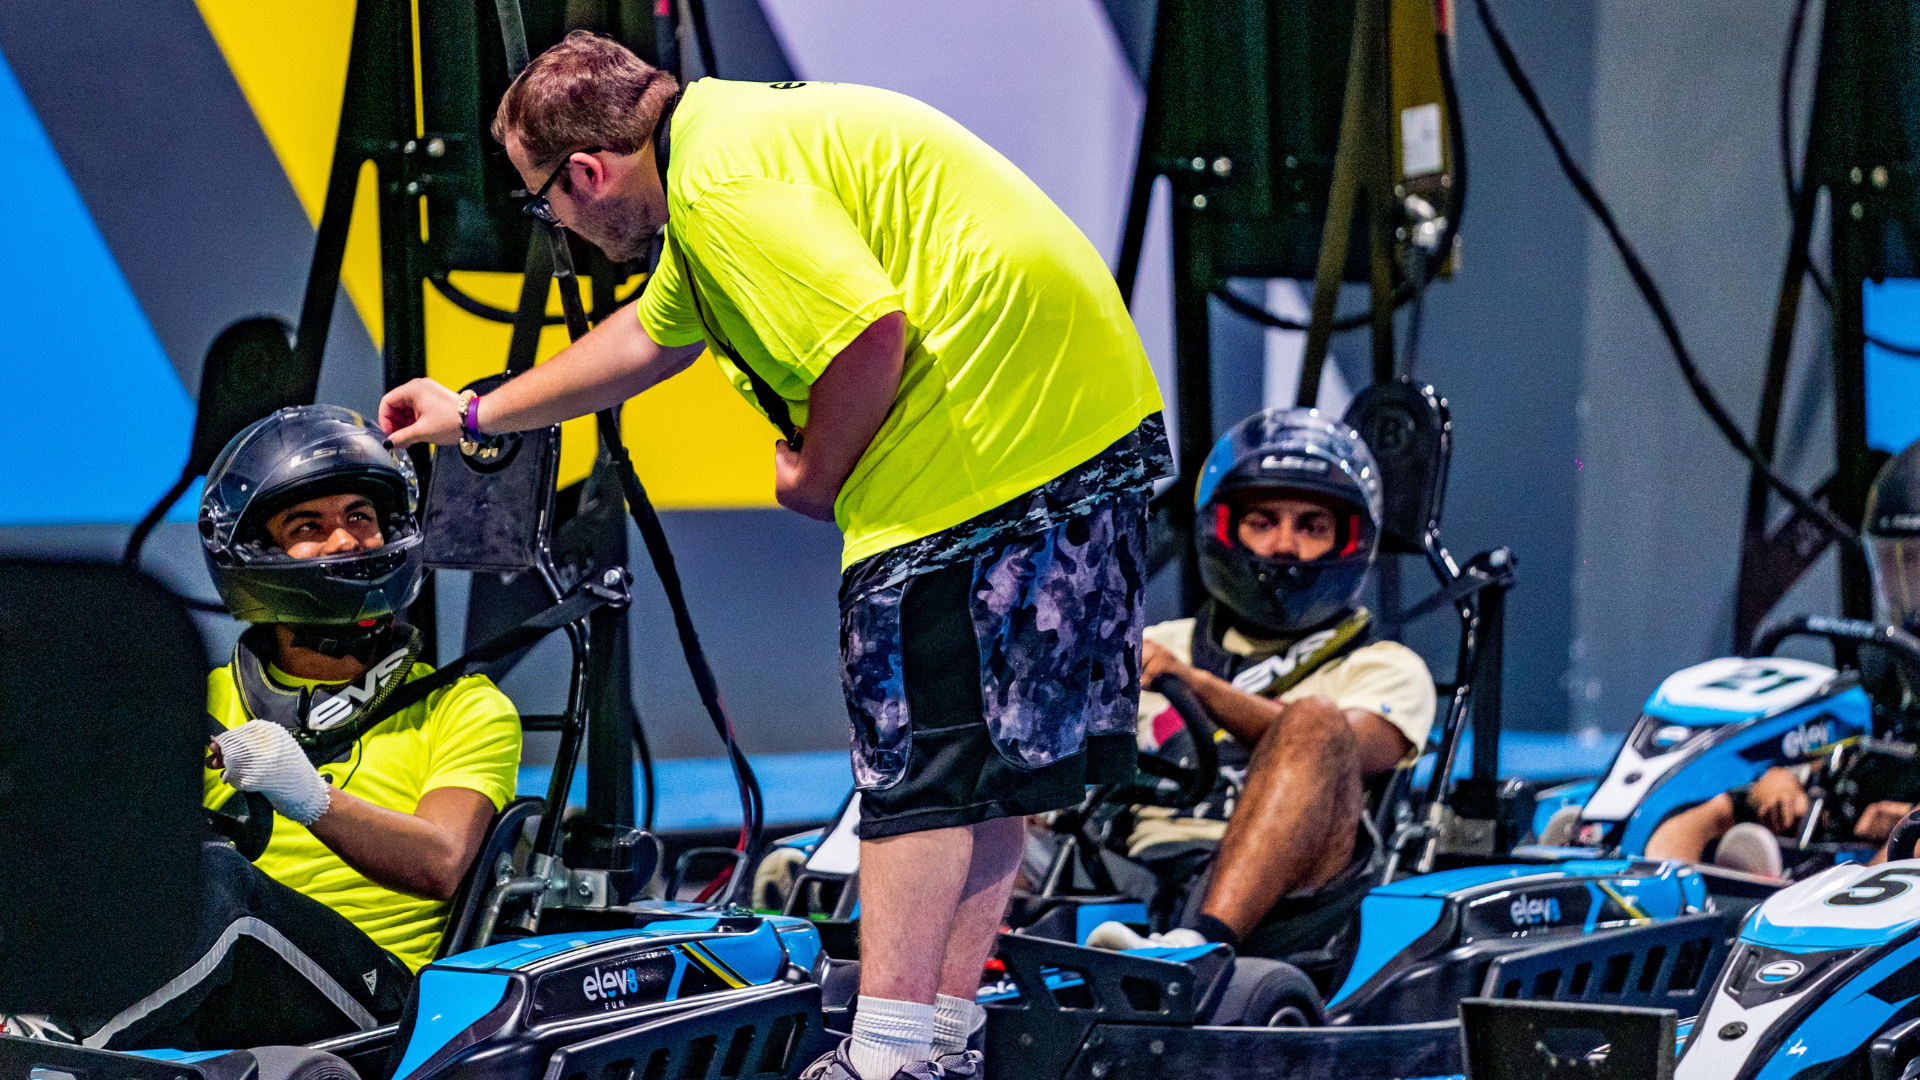 Indoor Go-Kart Racing in Orlando, Florida - Elev8 Fun